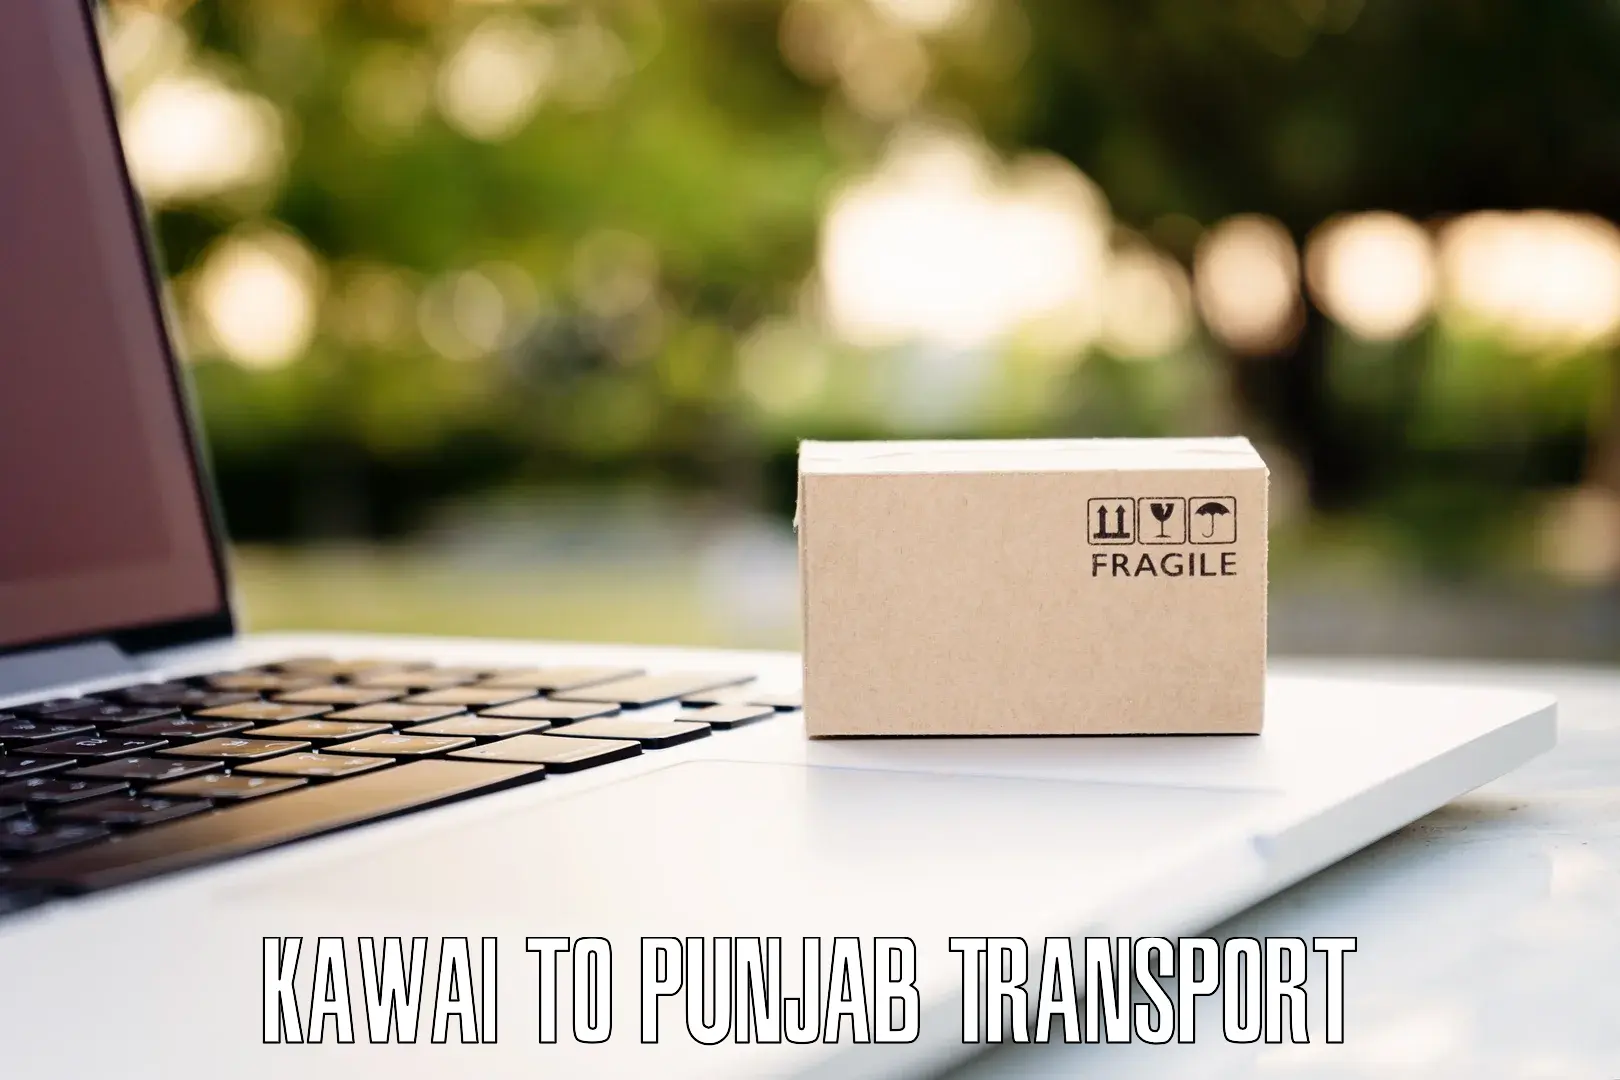 Transport in sharing in Kawai to Samana